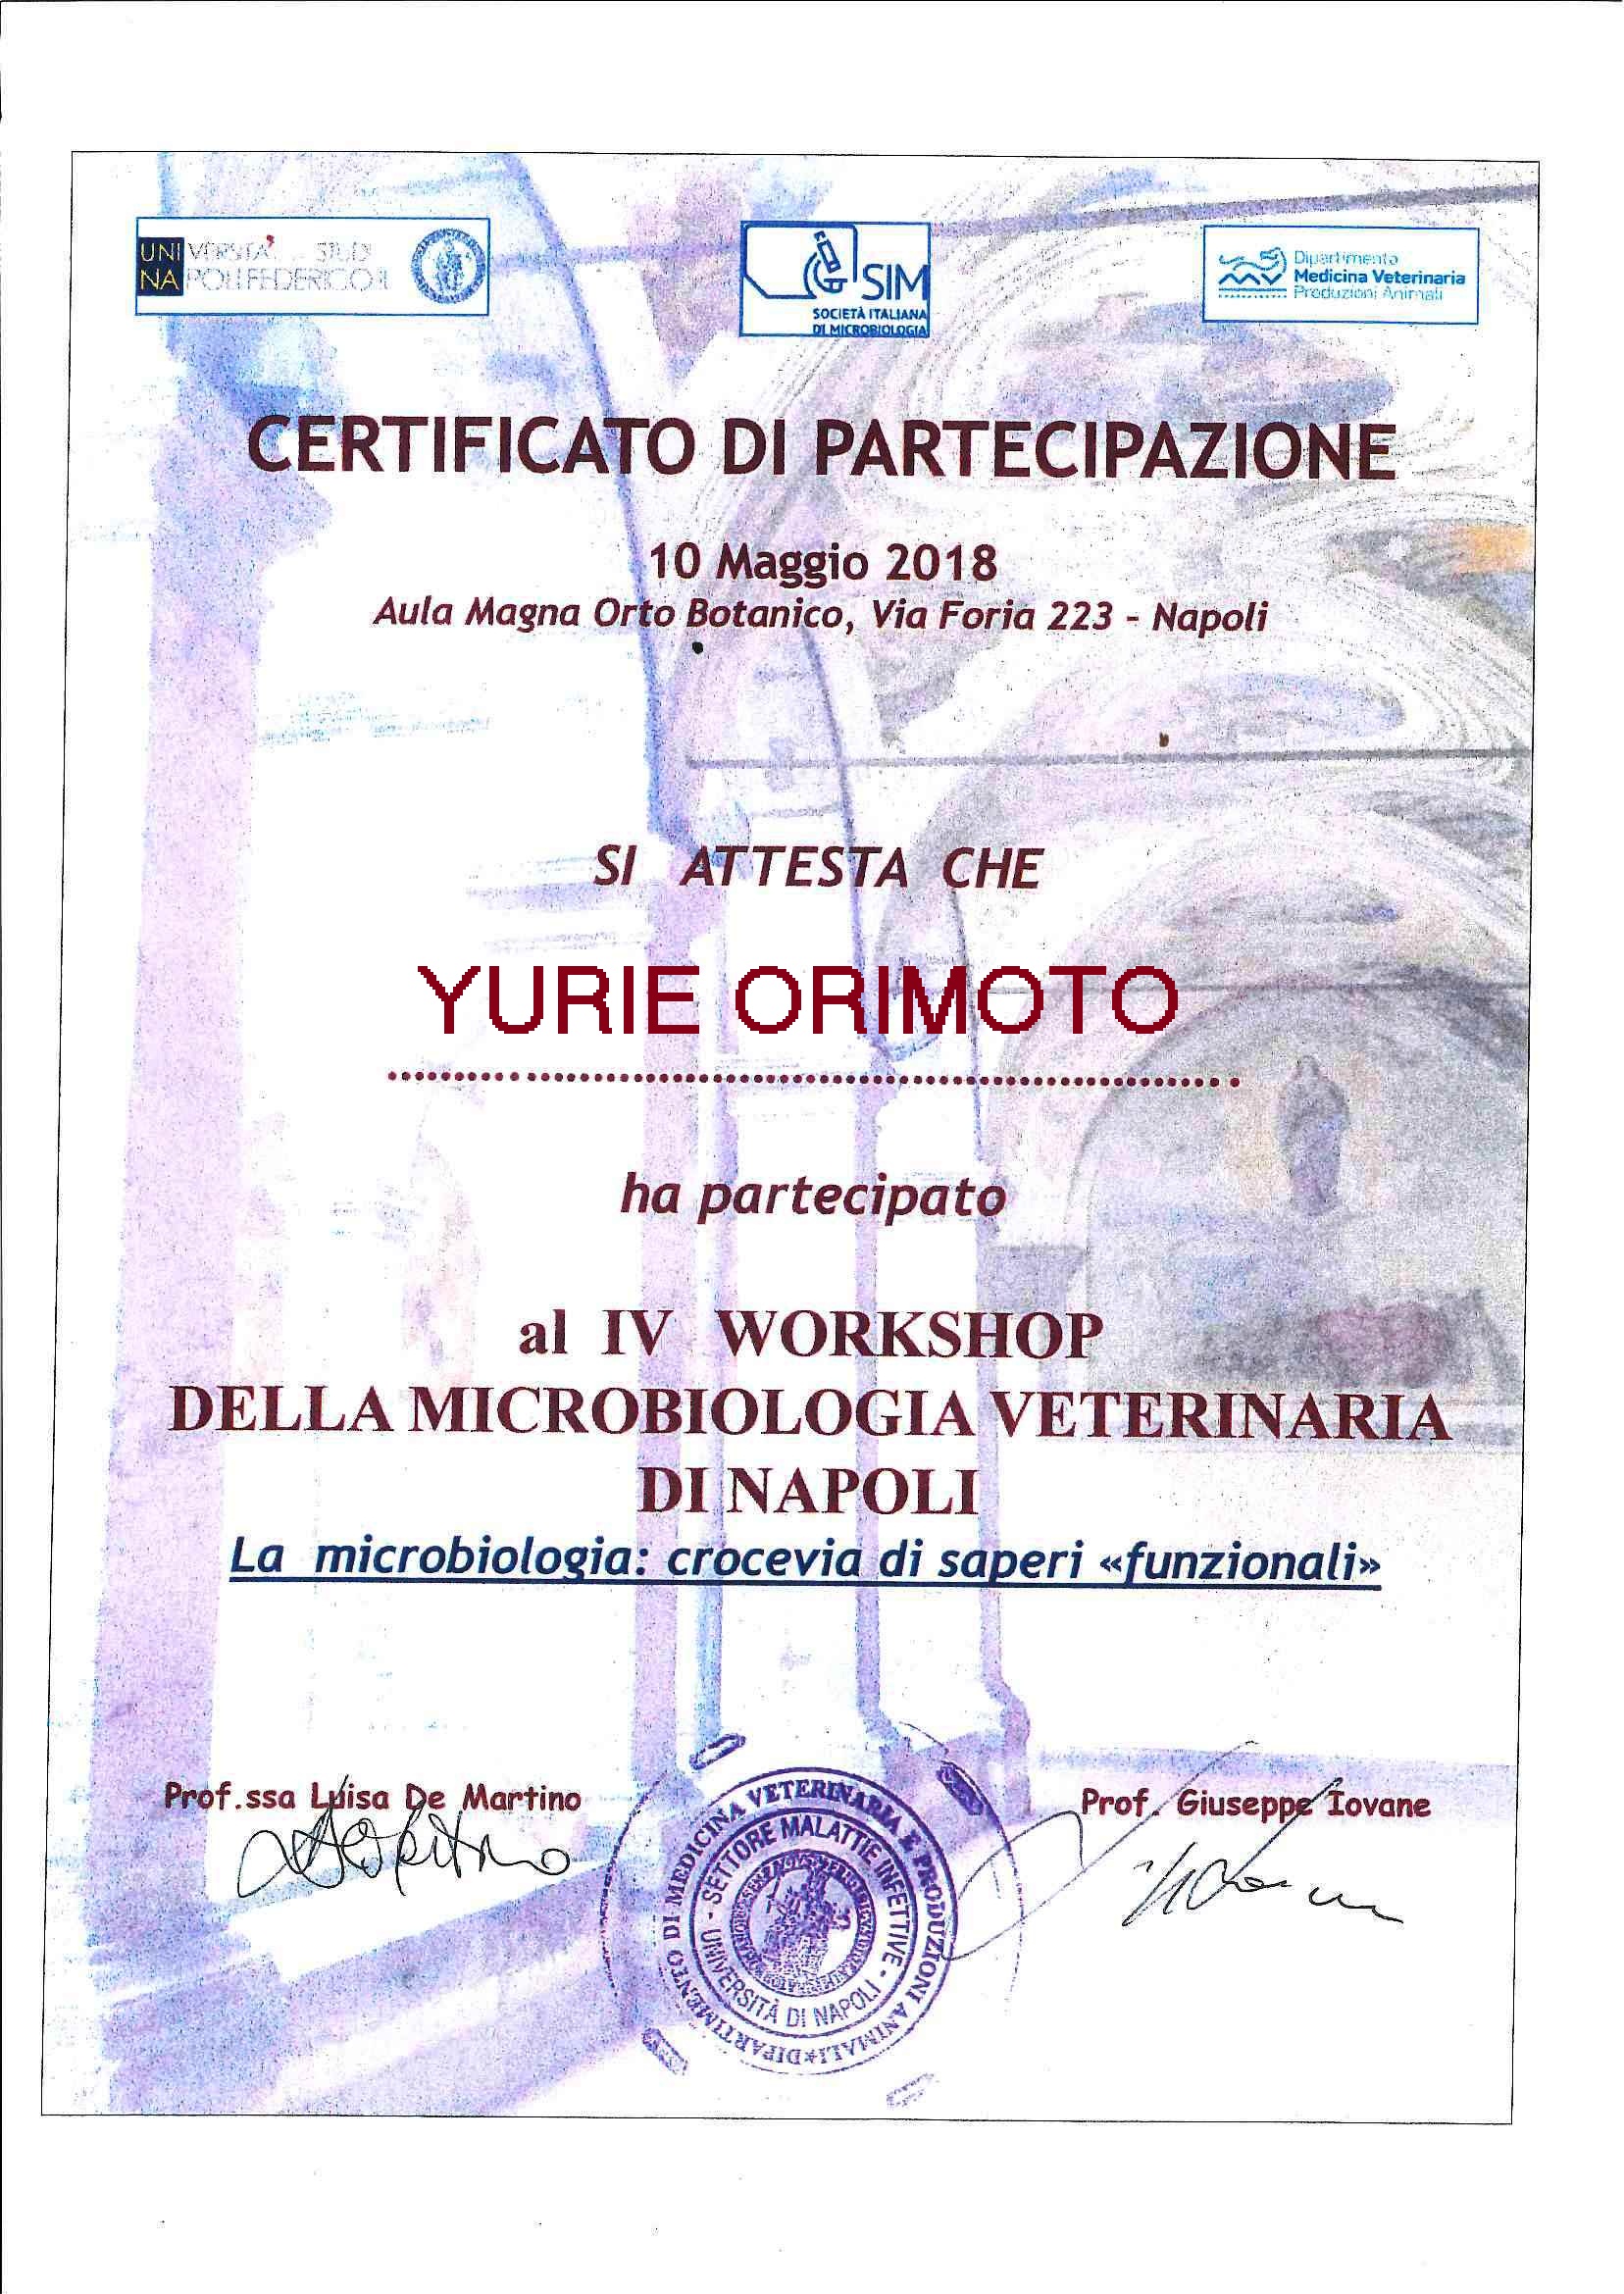 Partecipazione al IV Workshop Microbiologia Veterinaria Napoli